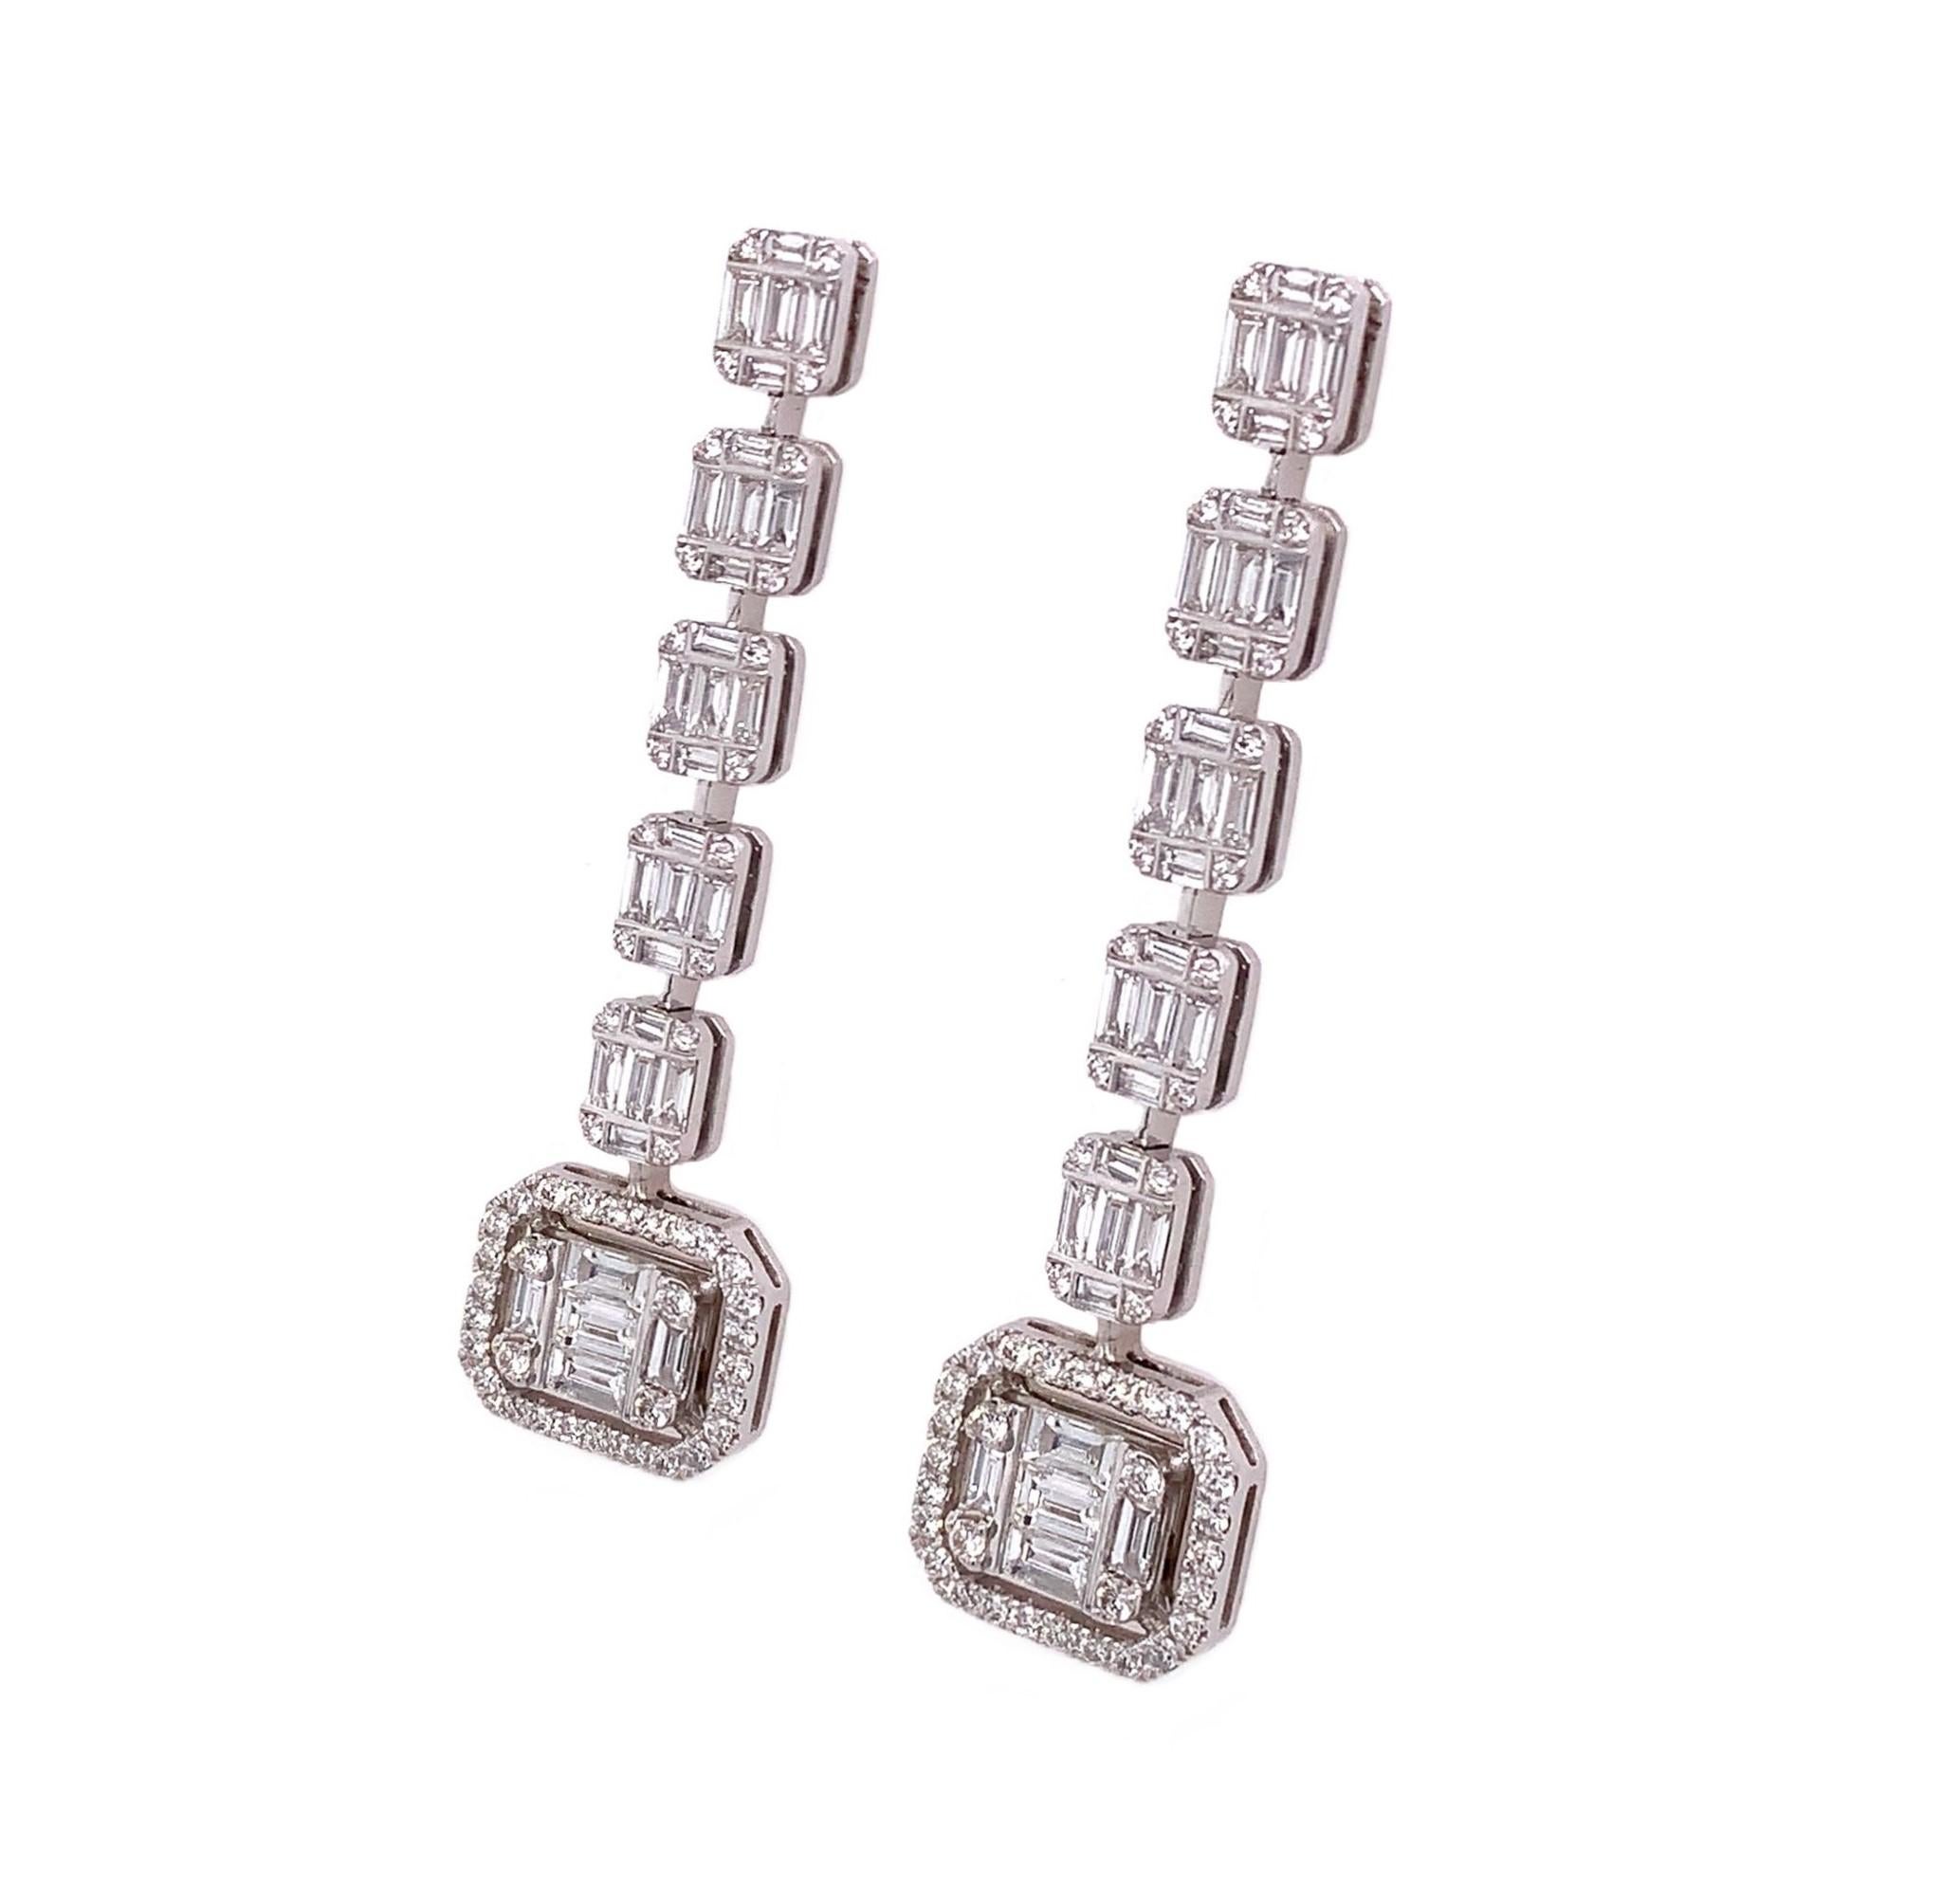 Baguette-Kollektion

Baguette-Diamant Ohrringe in 18K Weißgold.

Diamant: 1,85ct Gesamtgewicht.
Alle Diamanten sind G-H/SI-Steine.
